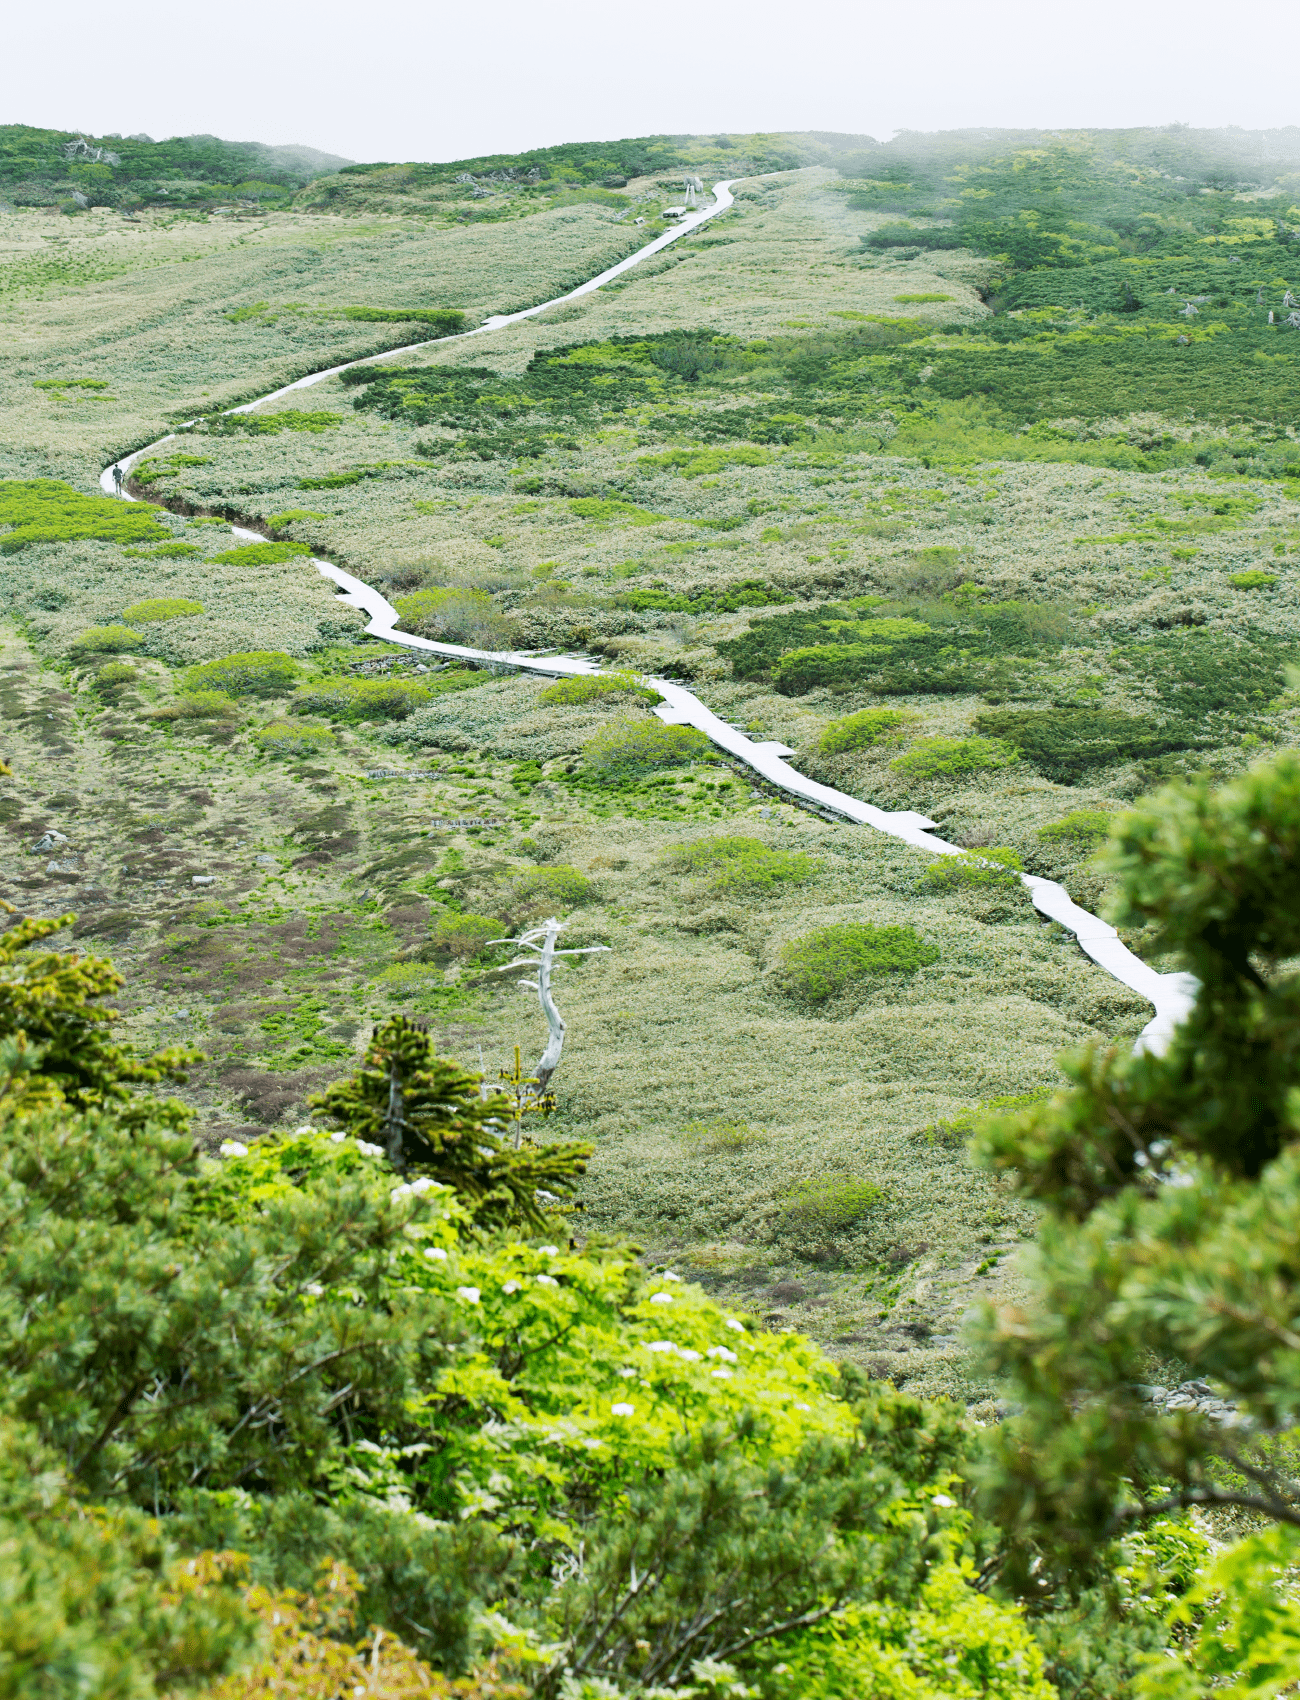 五葉坂から振り返った弥陀ヶ原の景色。木道が細長い川のように伸びているのが印象的。ここまで来たら白山室堂まであと少し！